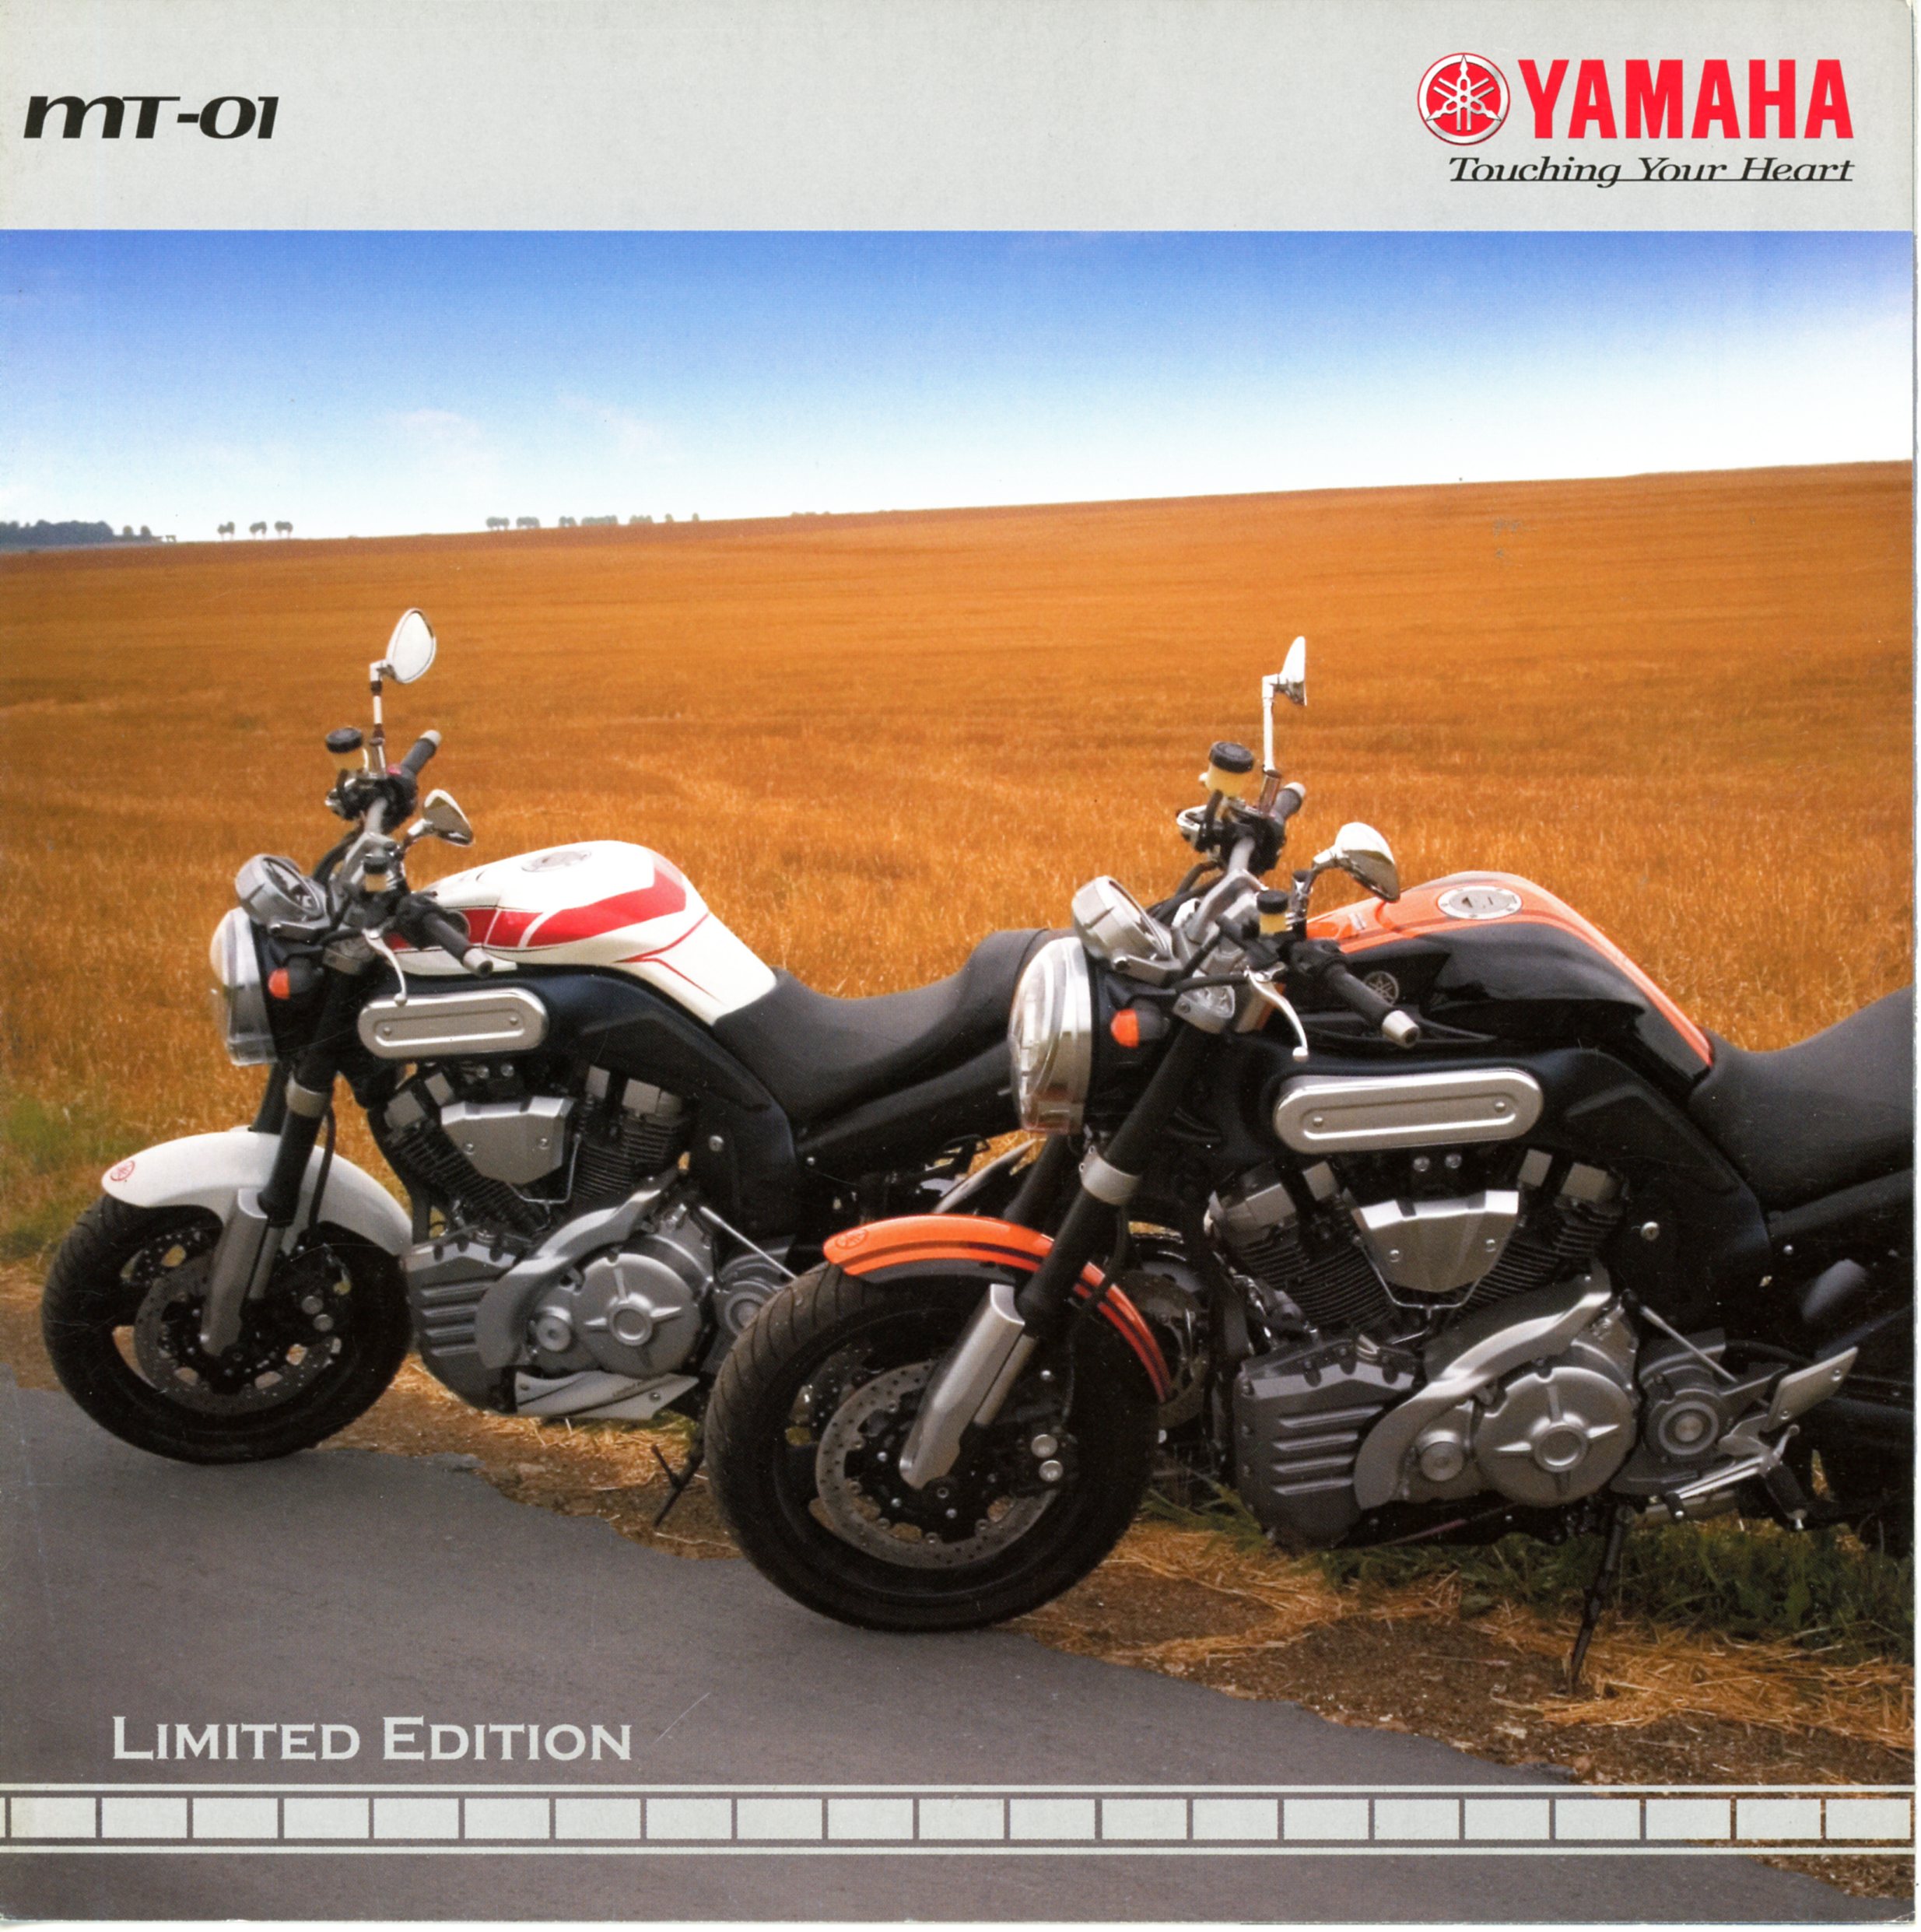 YAMAHA MT-01 LIMITED ÉDITION - BROCHURE MOTO PUBLICITAIRE